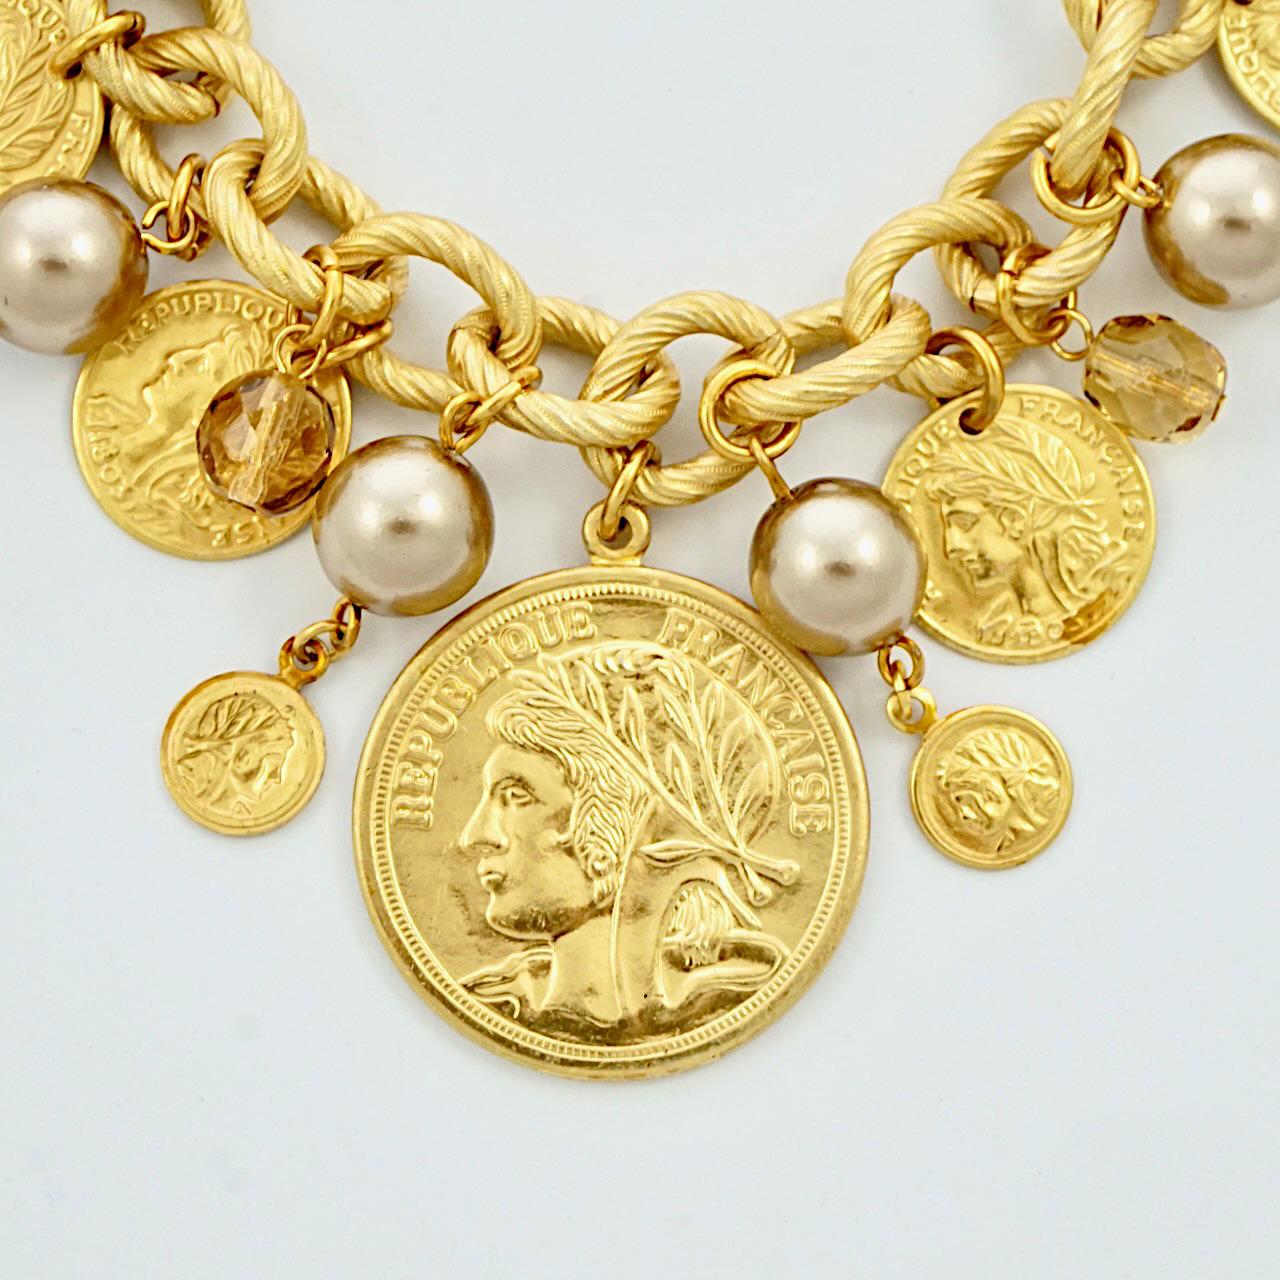 Fabelhaftes russisches vergoldetes Armband von Miriam Haskell mit blassgoldenen Kunstperlen und facettiertem Citrin-Glas sowie griechischen und französischen Schmuckmünzen. Die Länge beträgt 20,3 cm / 8 Zoll, und die größte Münze hat einen